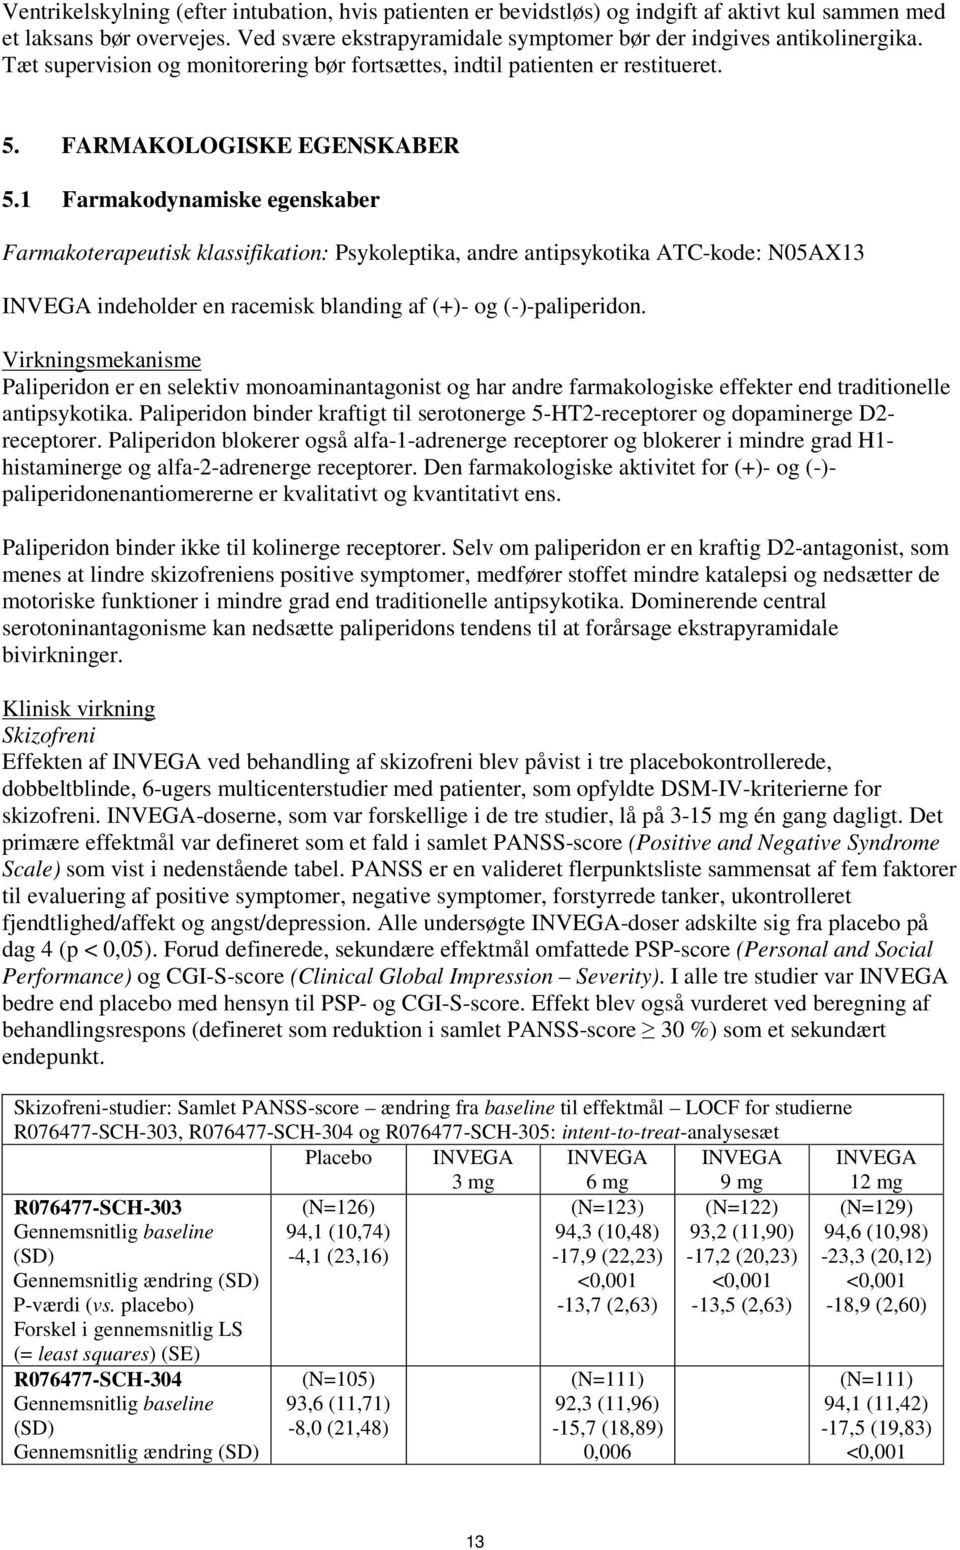 1 Farmakodynamiske egenskaber Farmakoterapeutisk klassifikation: Psykoleptika, andre antipsykotika ATC-kode: N05AX13 indeholder en racemisk blanding af (+)- og (-)-paliperidon.